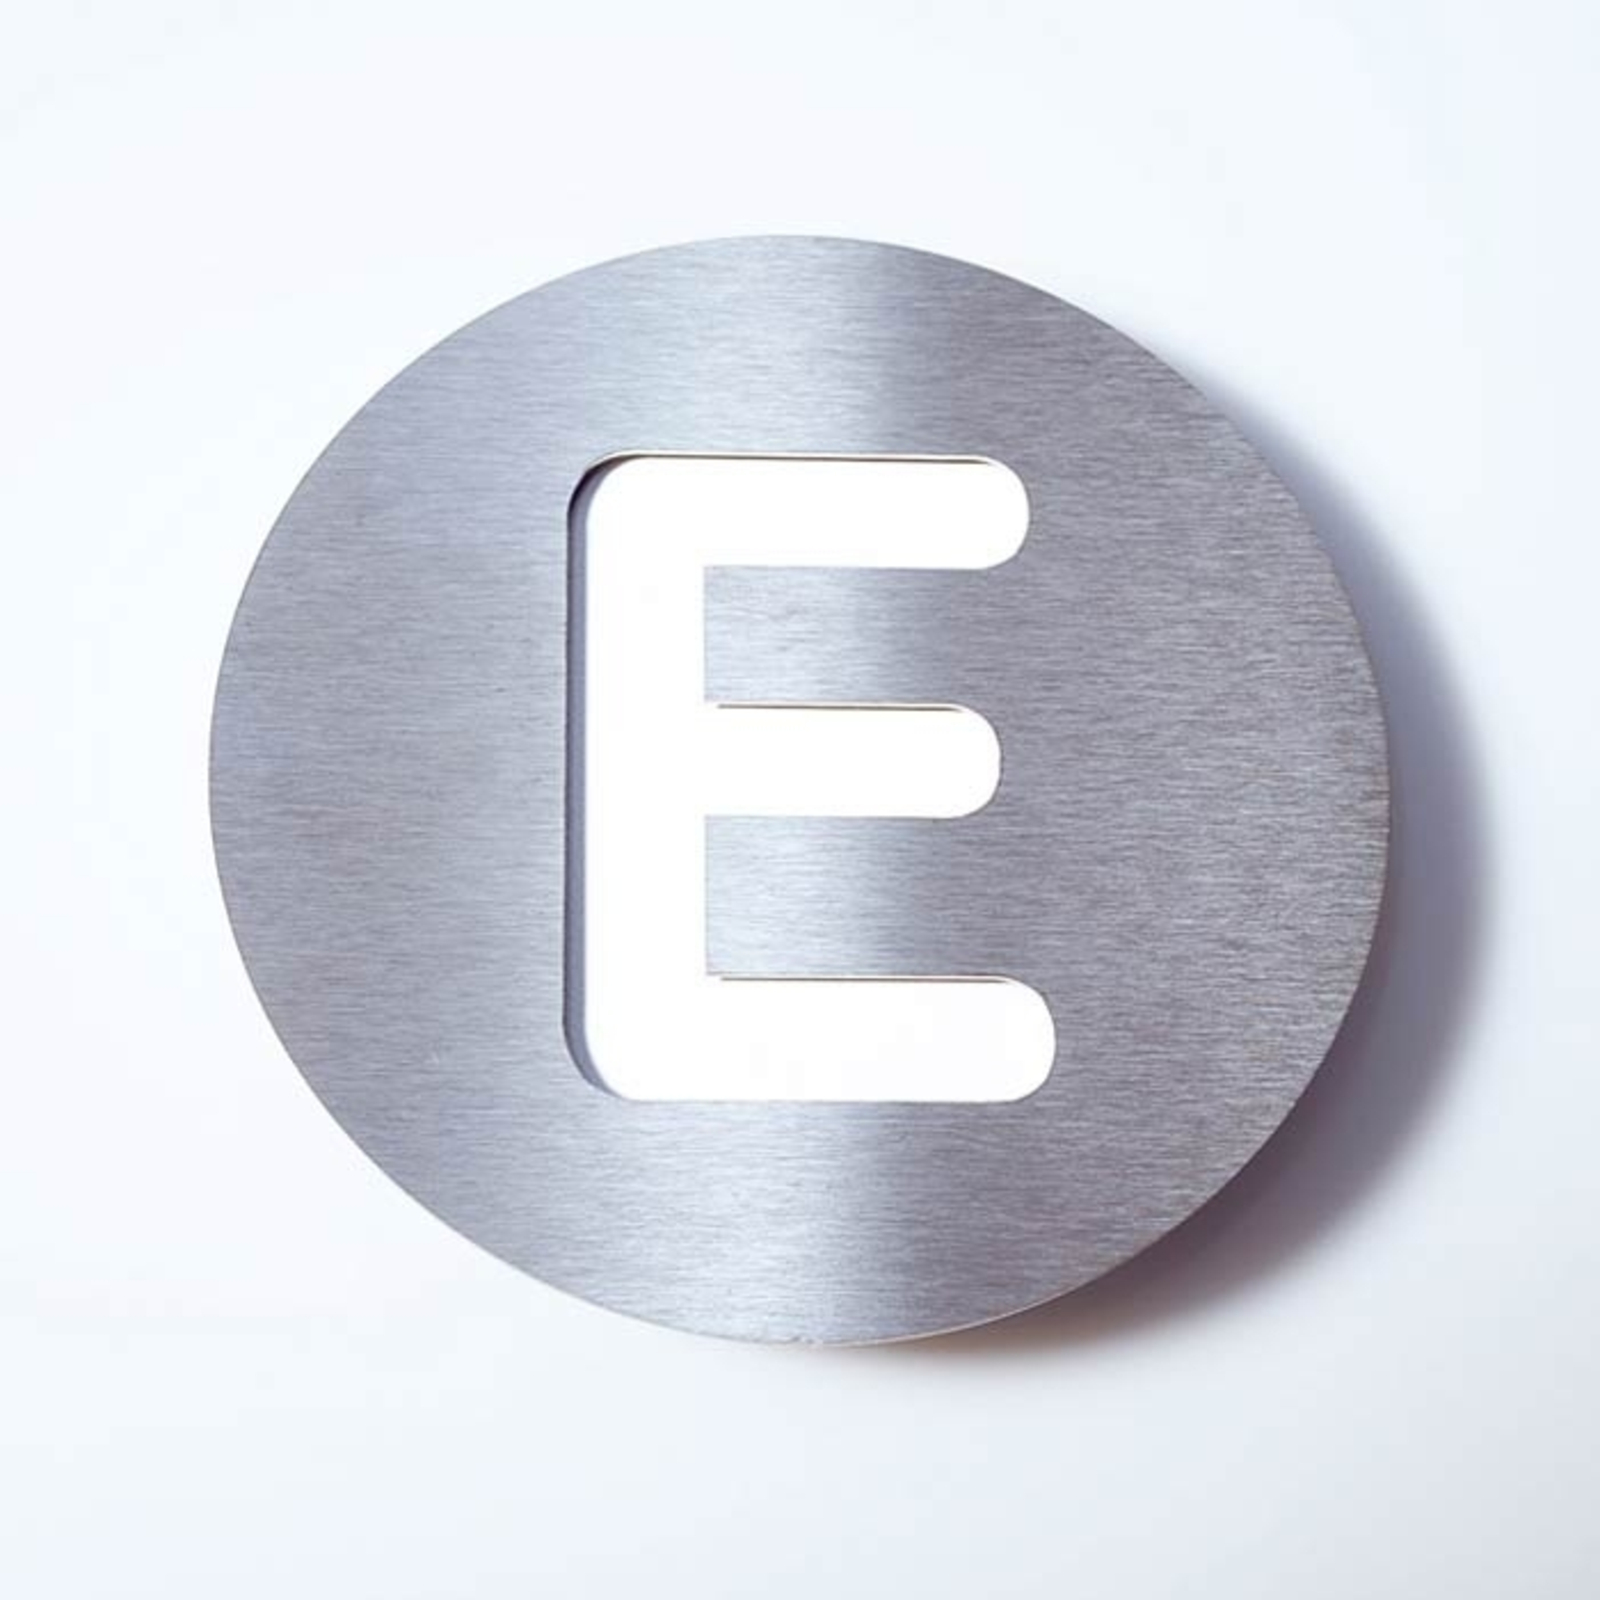 Číslo domu z ušľachtilej ocele Round – E